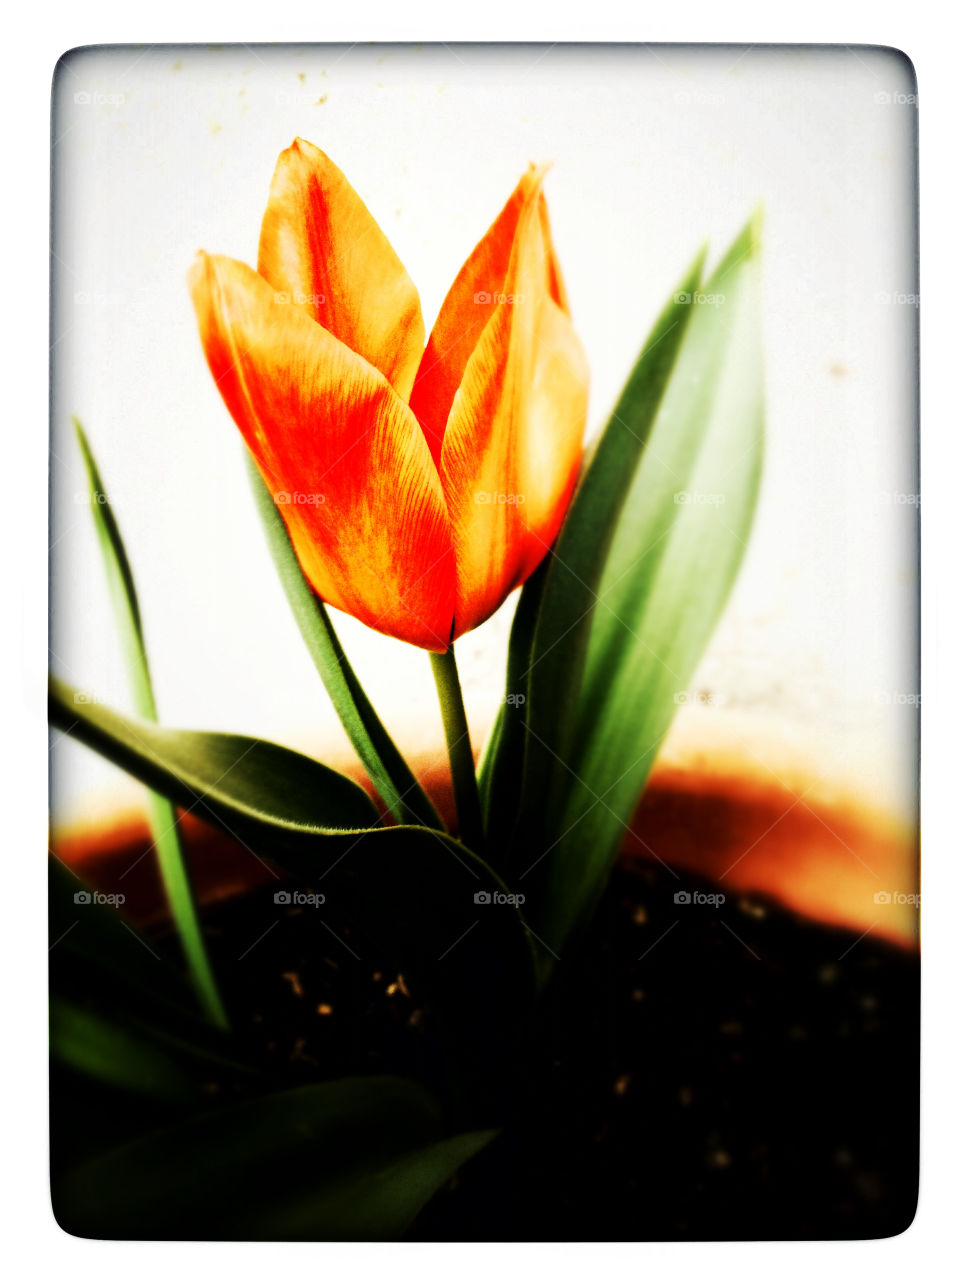 naranja tulipán orange tulip by iC